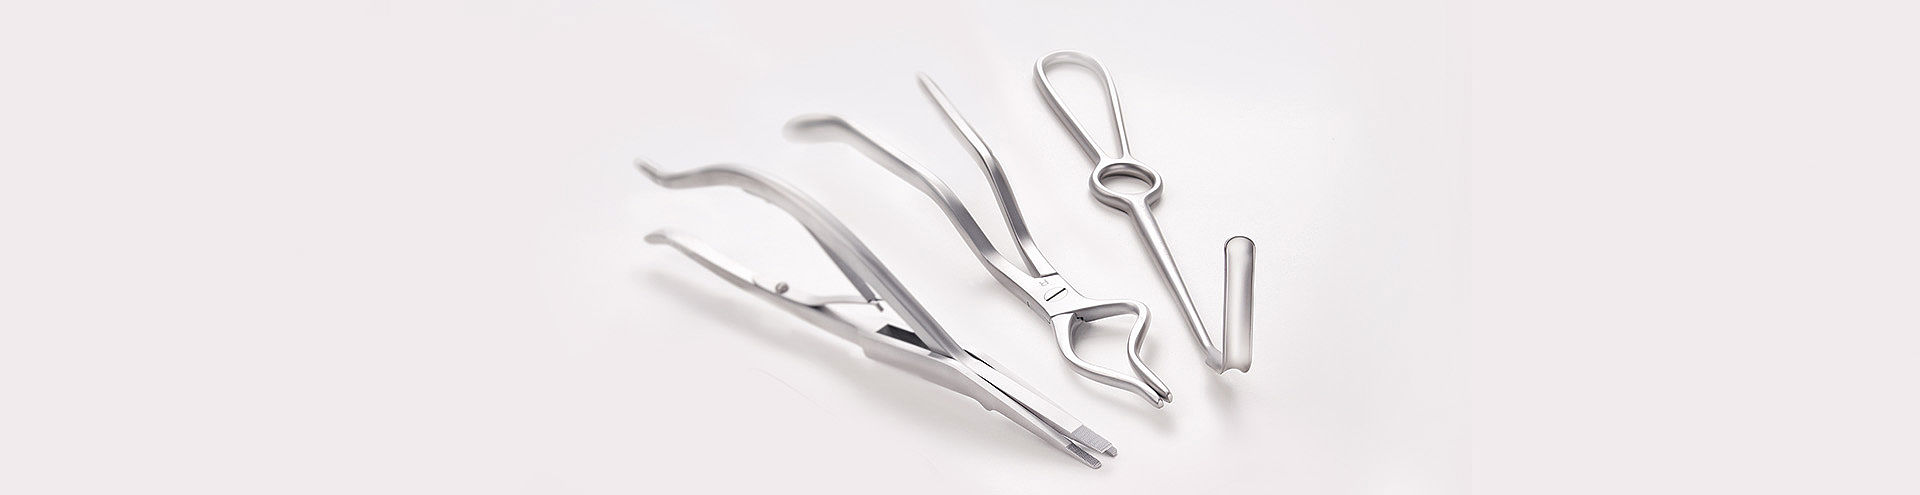 Хирургические инструменты для черепно челюстно лицевой хирургии